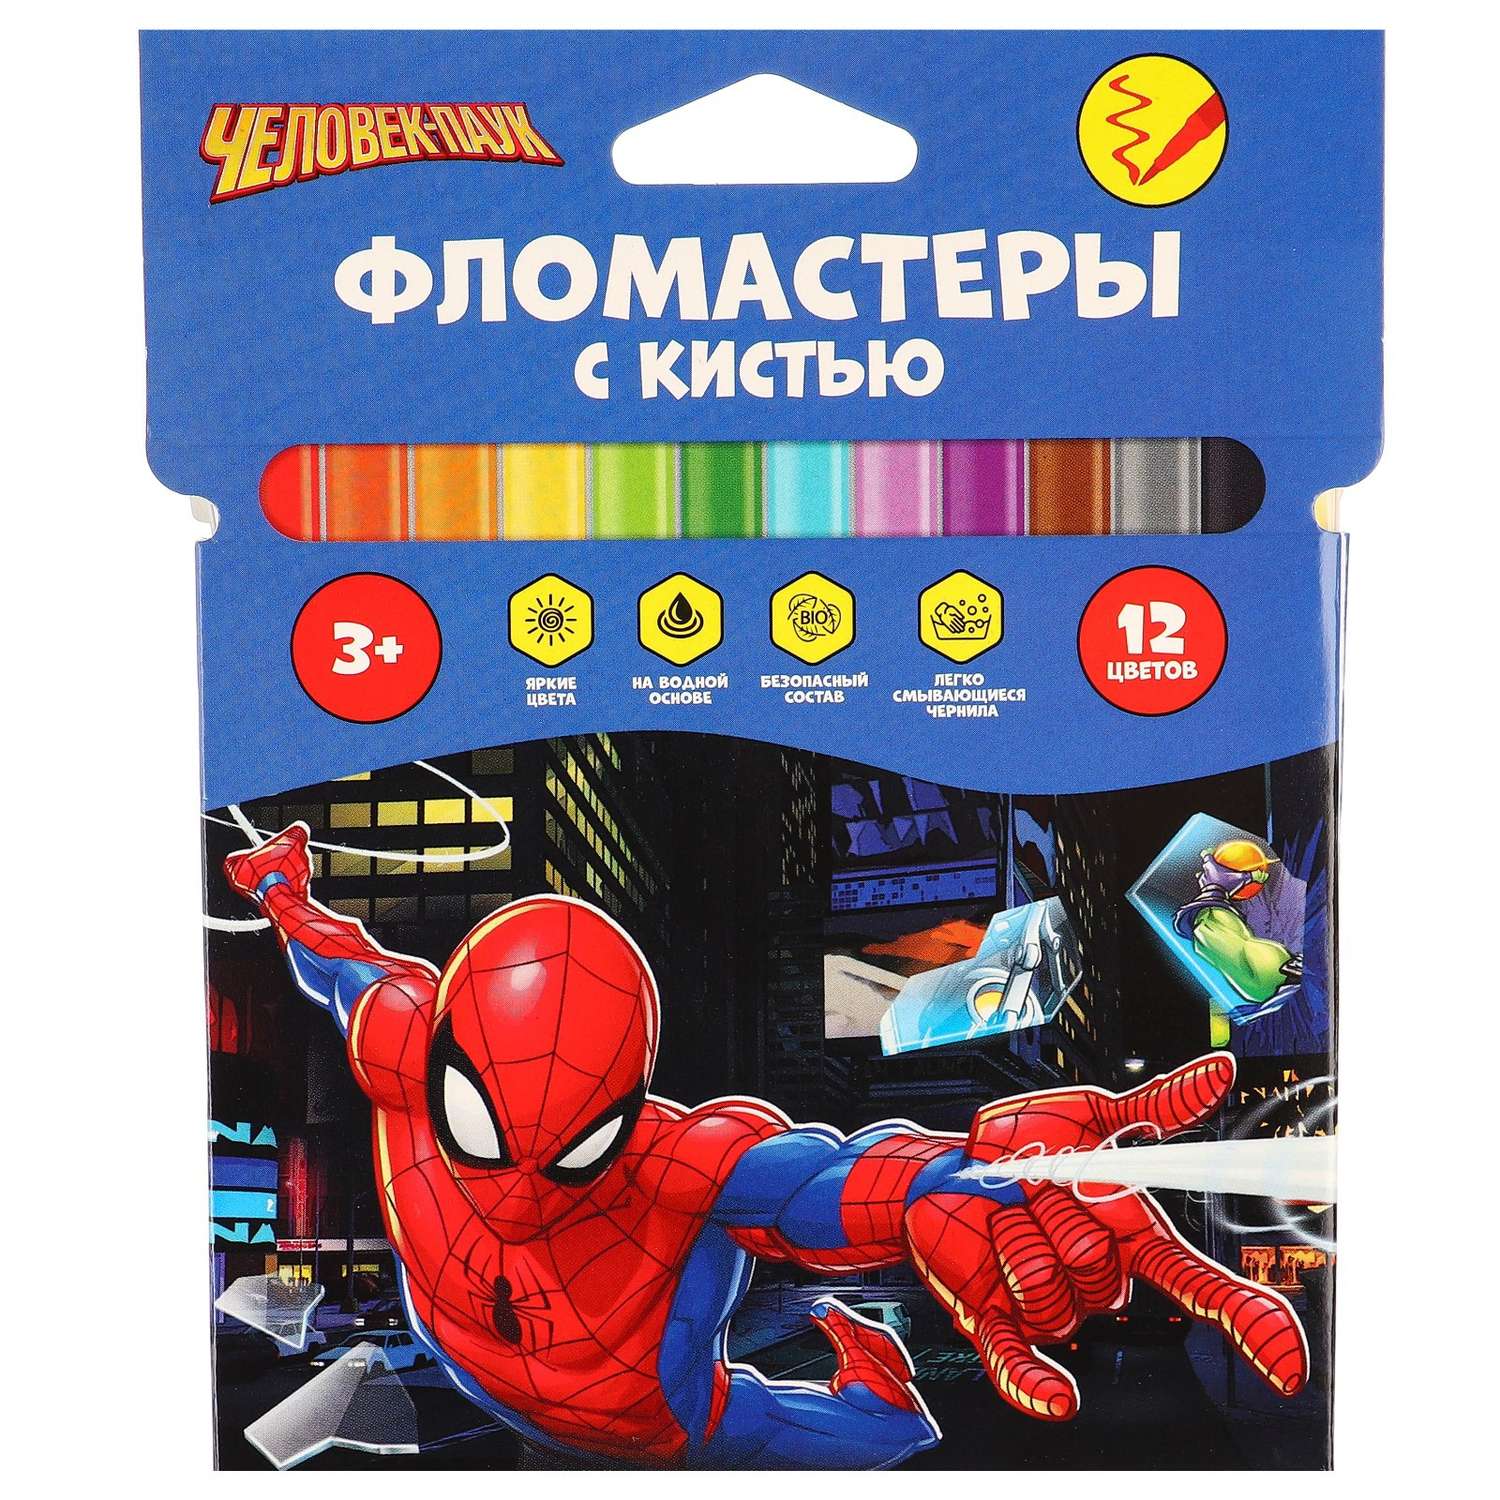 Фломастеры DISNEY(Sofia) с кистью 12 цветов Человек-паук - фото 11